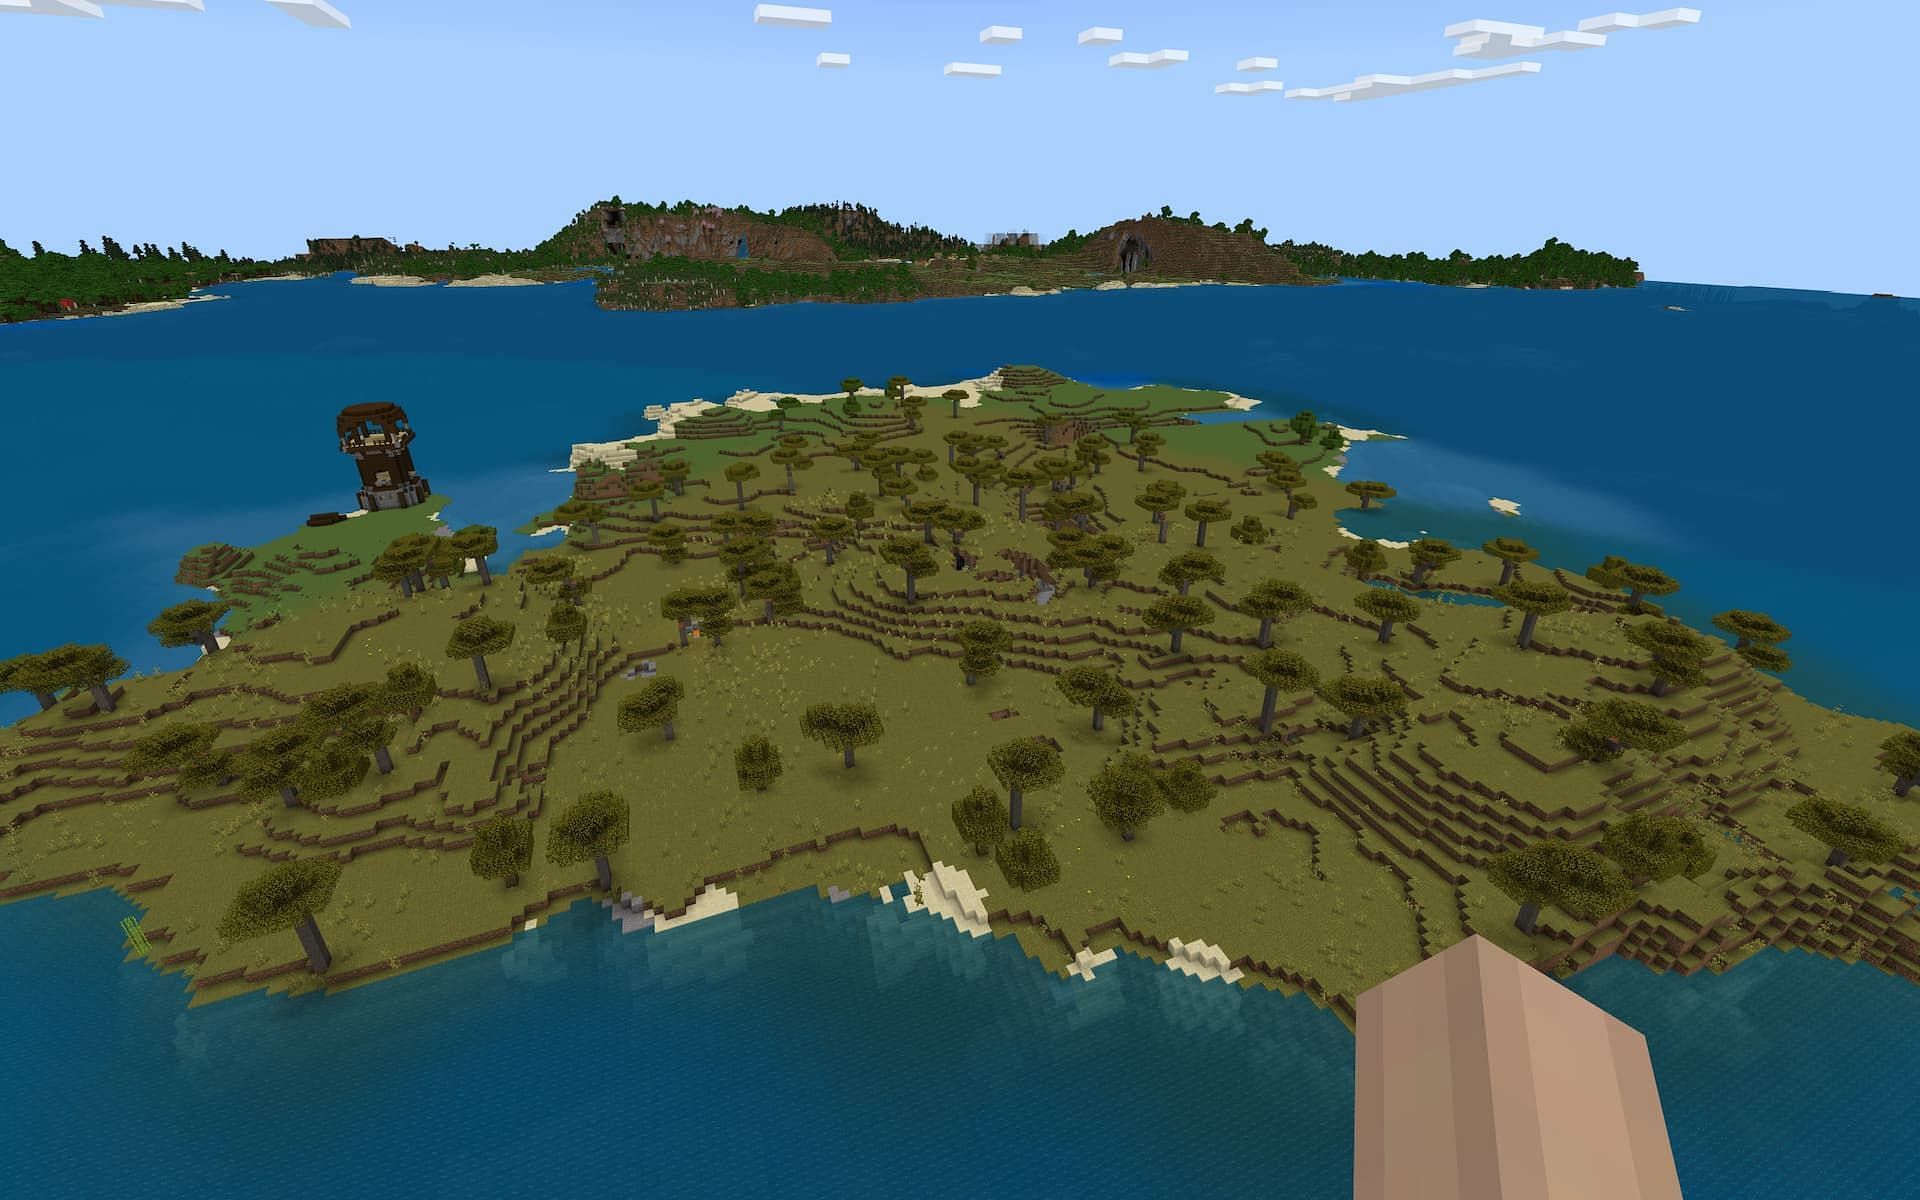 A private island and riches at spawn (Image via Mojang)